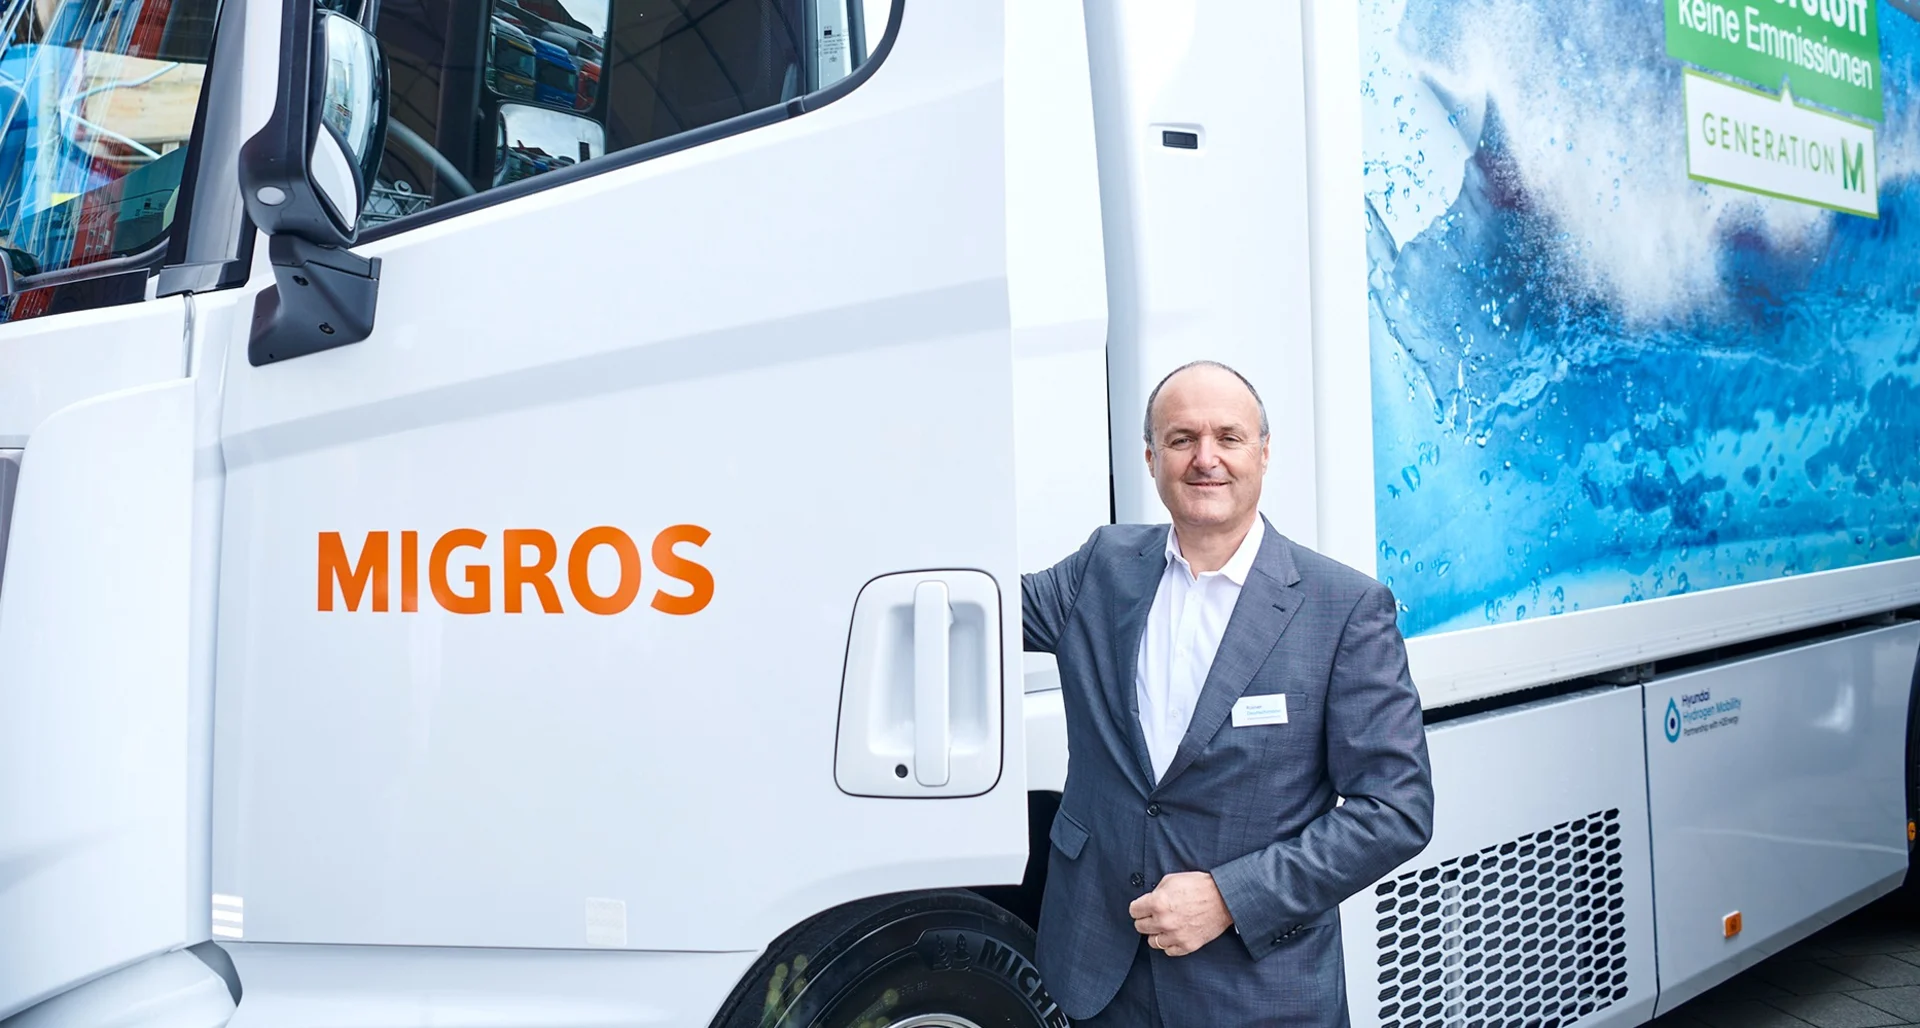 Rainer Deutschmann in front of a hydrogen truck